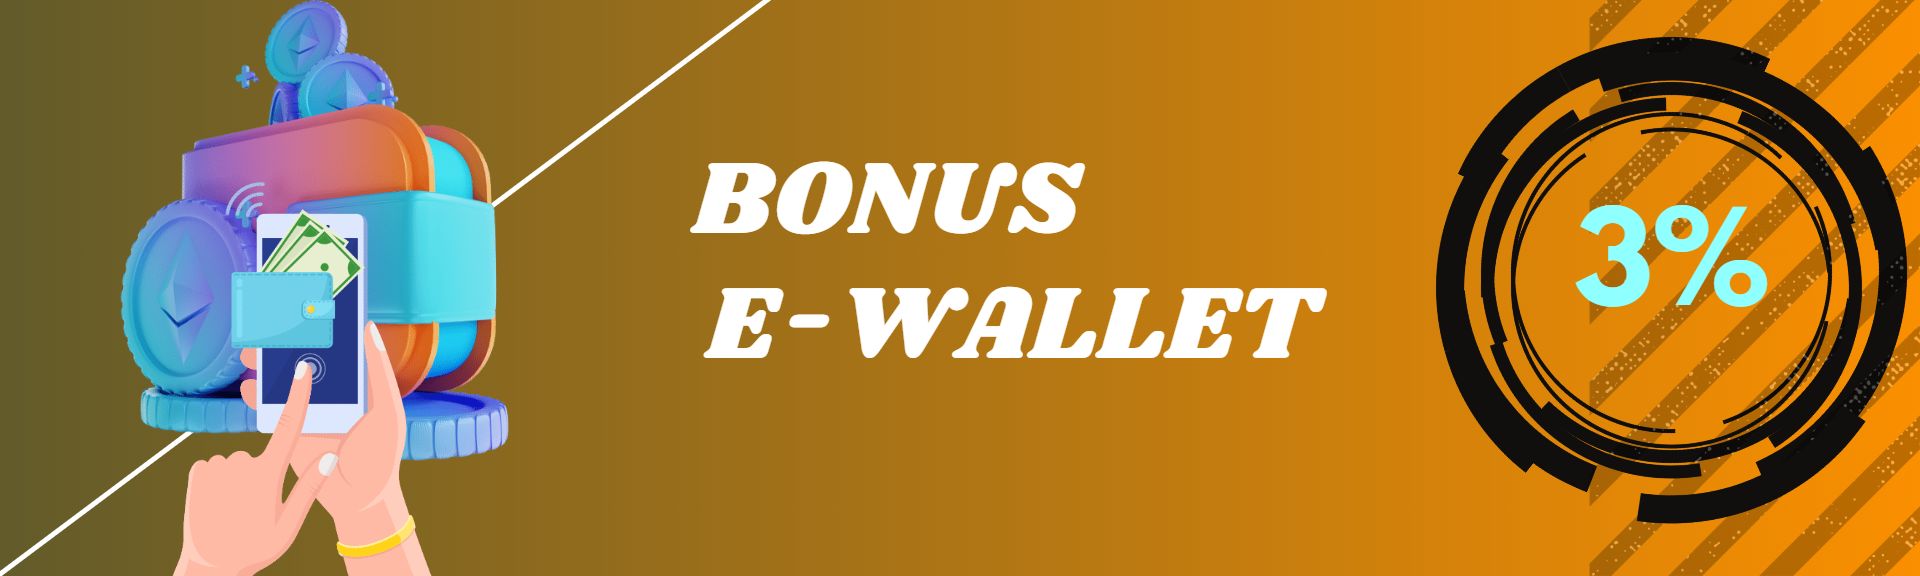 BONUS E-WALLET